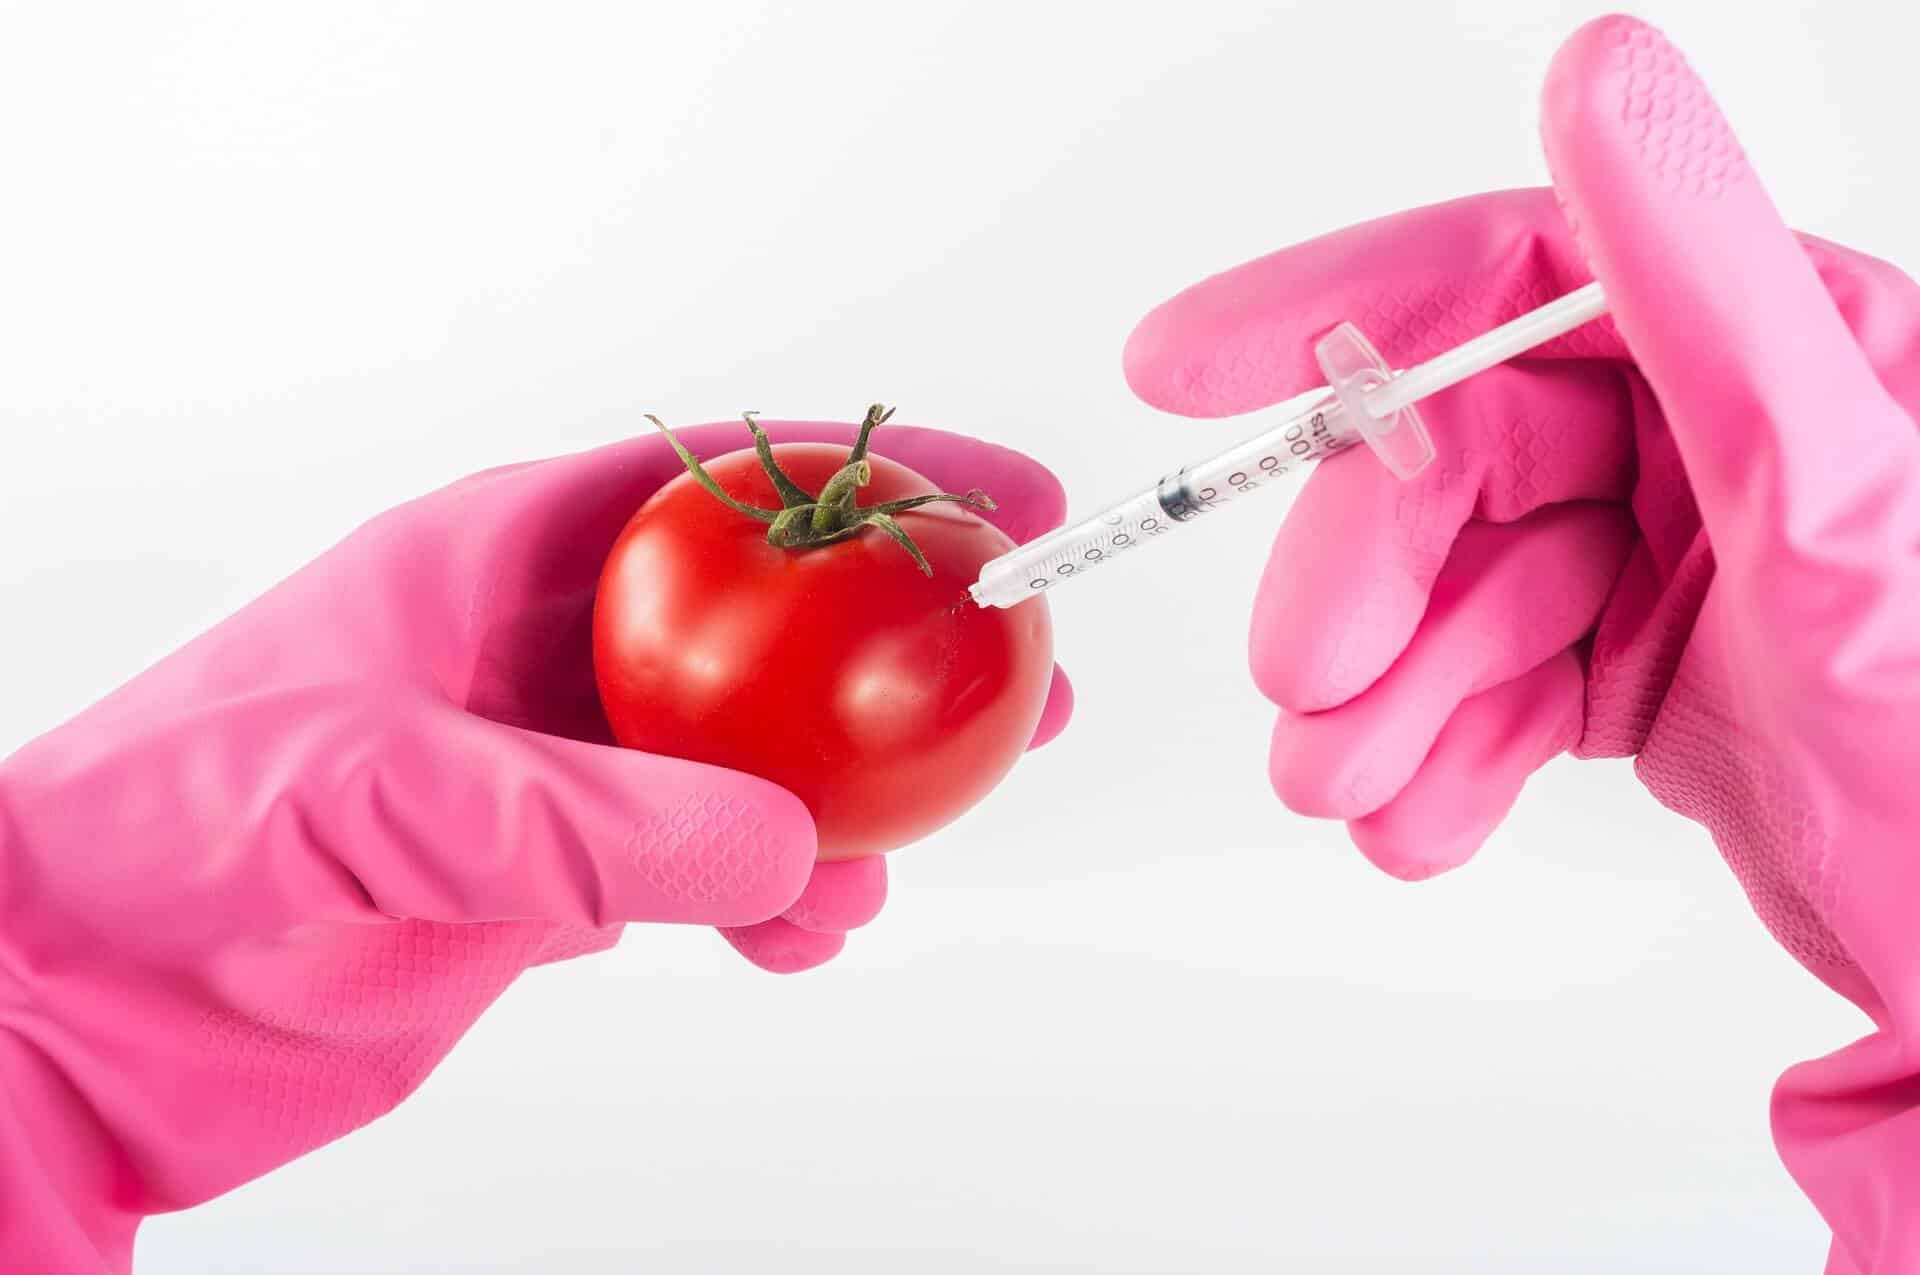 Sú geneticky modifikované organizmy škodlivé? - modified 1744952 1920 - Sú geneticky modifikované organizmy škodlivé?